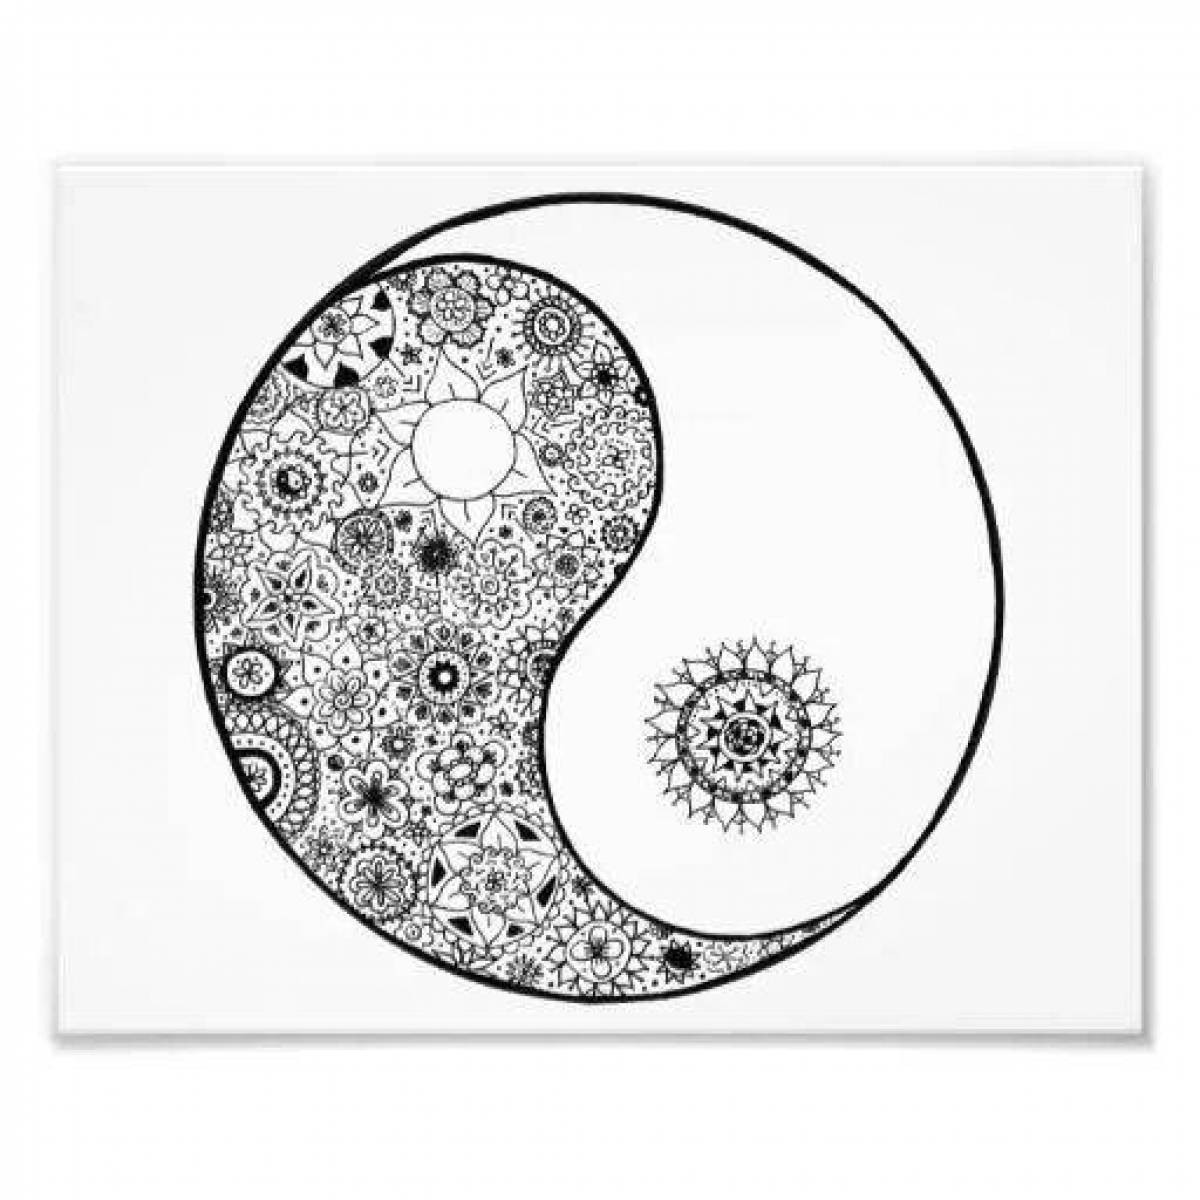 Great yin yang coloring page